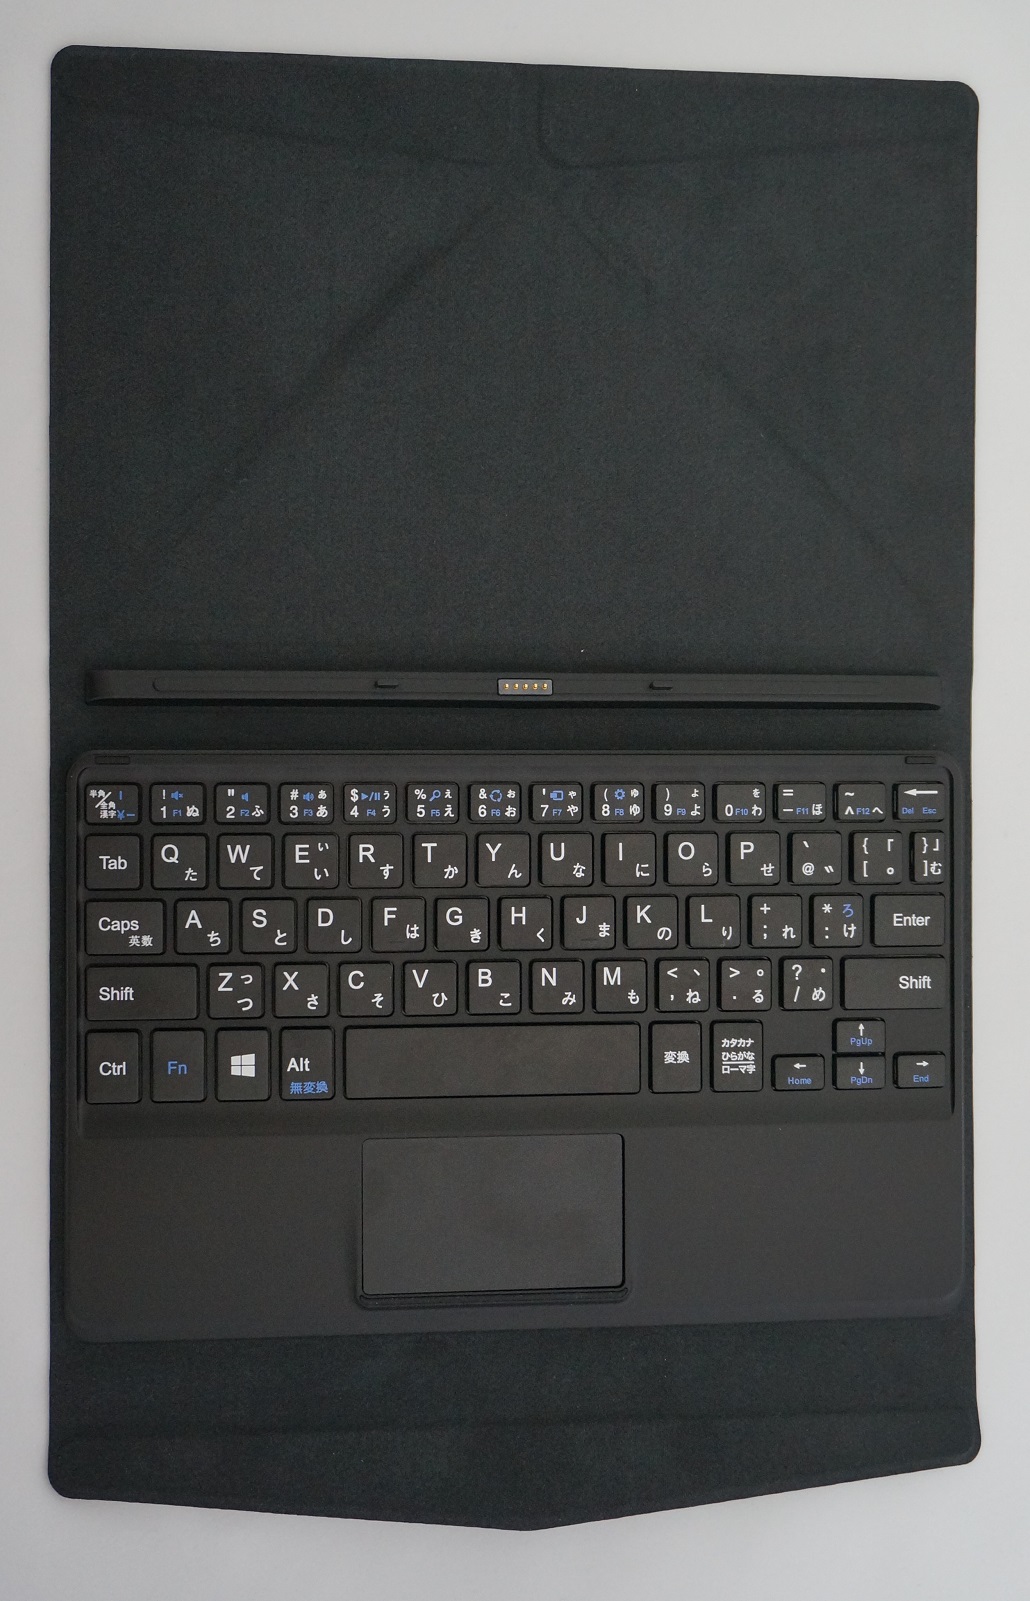 キーボード付に進化したタブレットPC「IT8i-9P1150T-AT-FEM